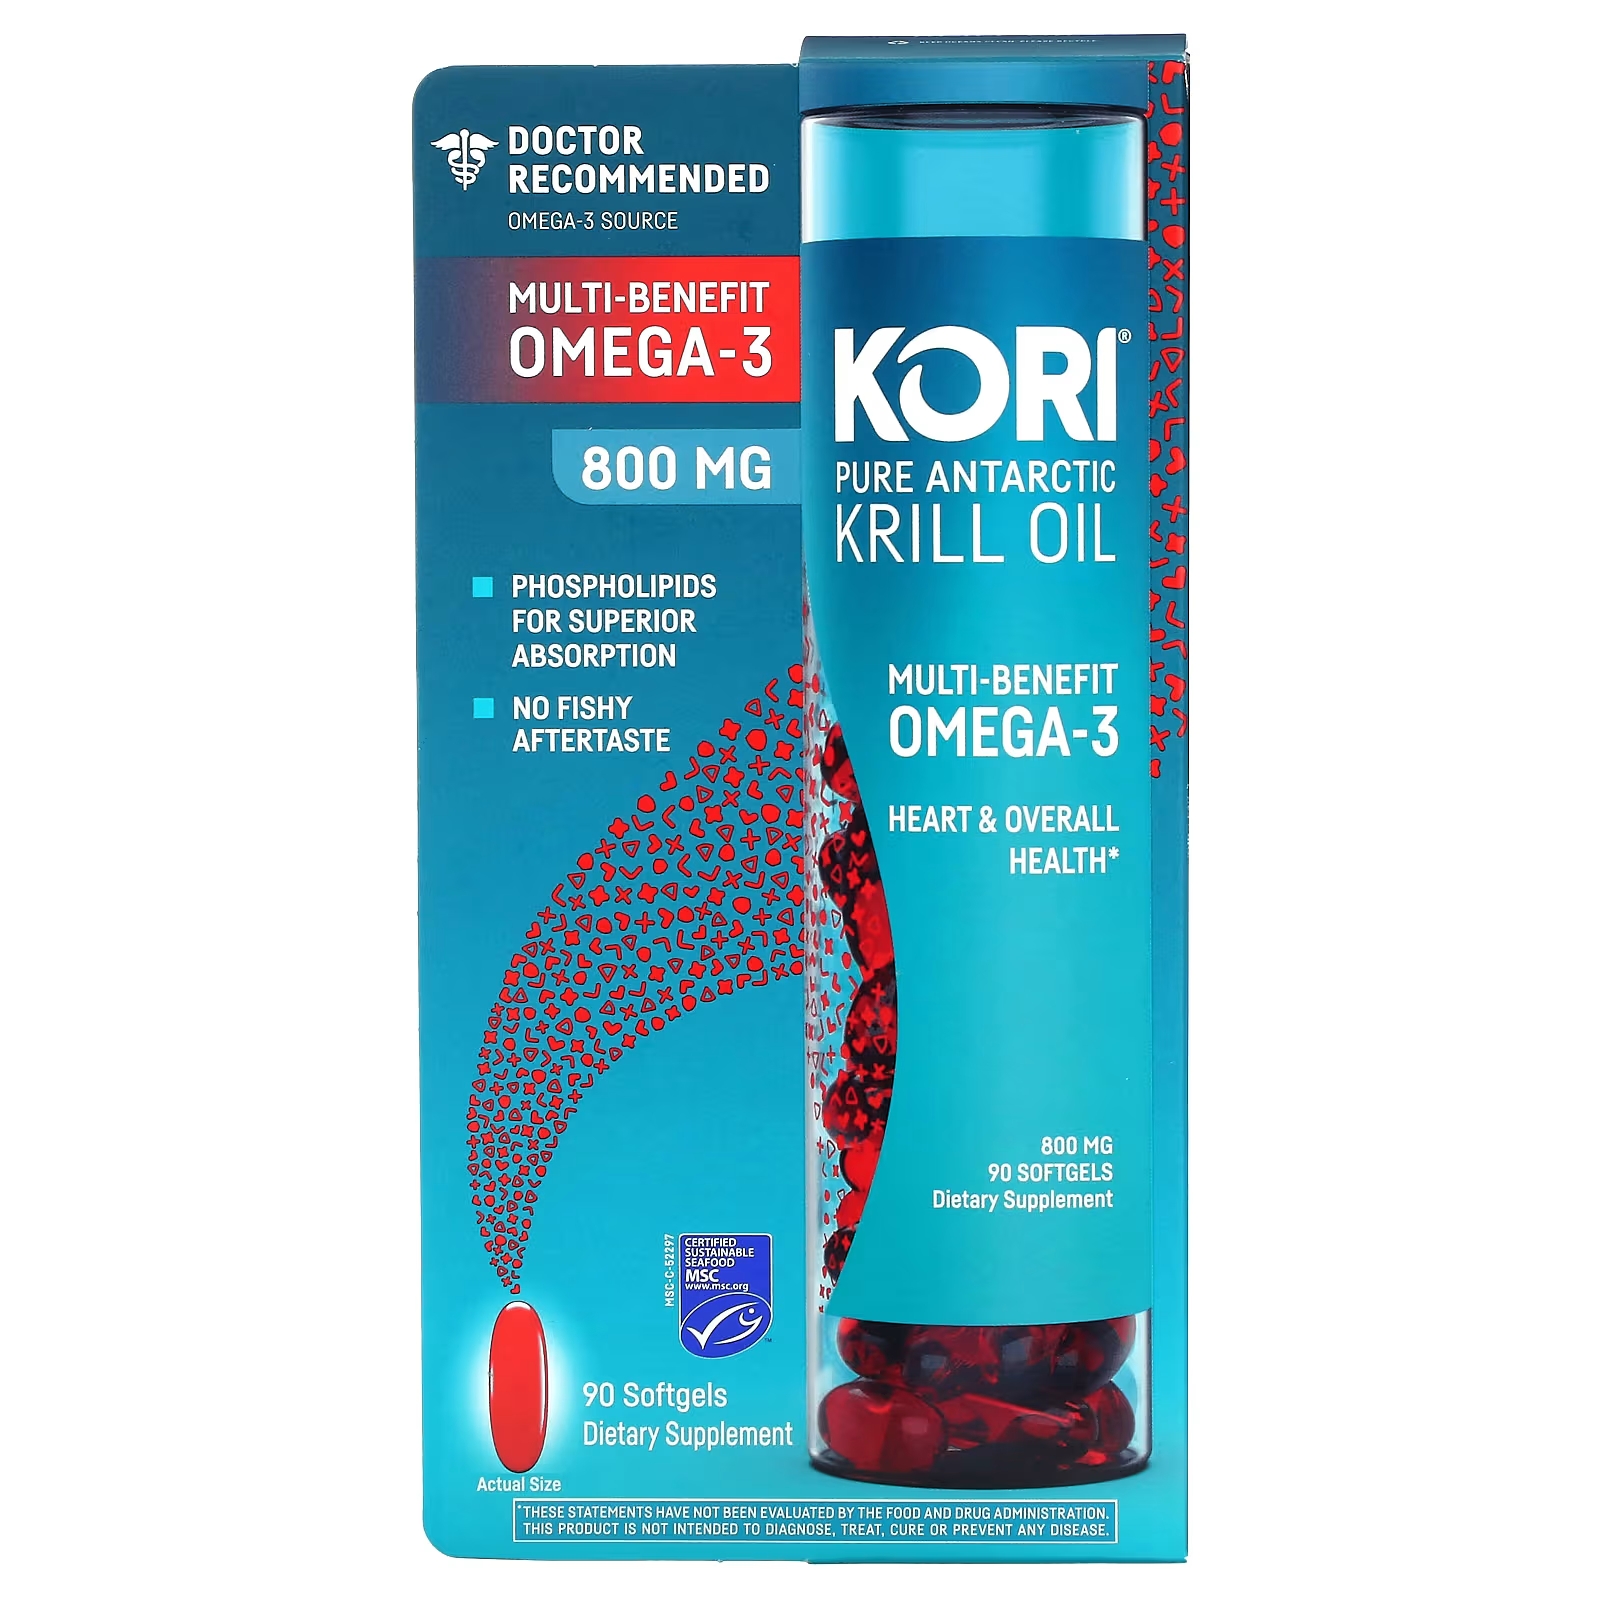 Kori Pure Масло антарктического криля с многофункциональными преимуществами Омега-3, 800 мг, 90 мягких таблеток